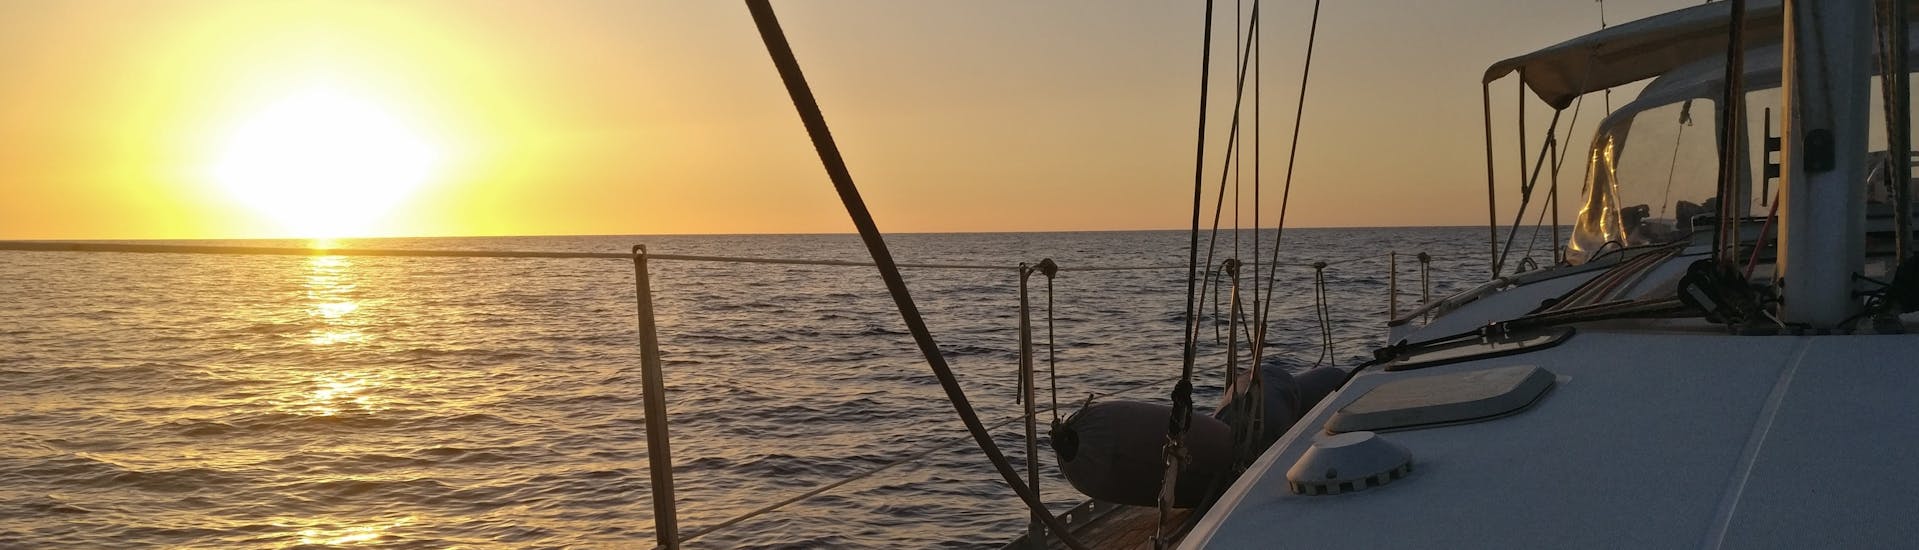 Uitzicht op zee bij zonsondergang vanaf een boot vanuit Quarantesimo Parallelo Leuca tijdens de privé-zeiltocht van Leuca naar de kust van Salento.